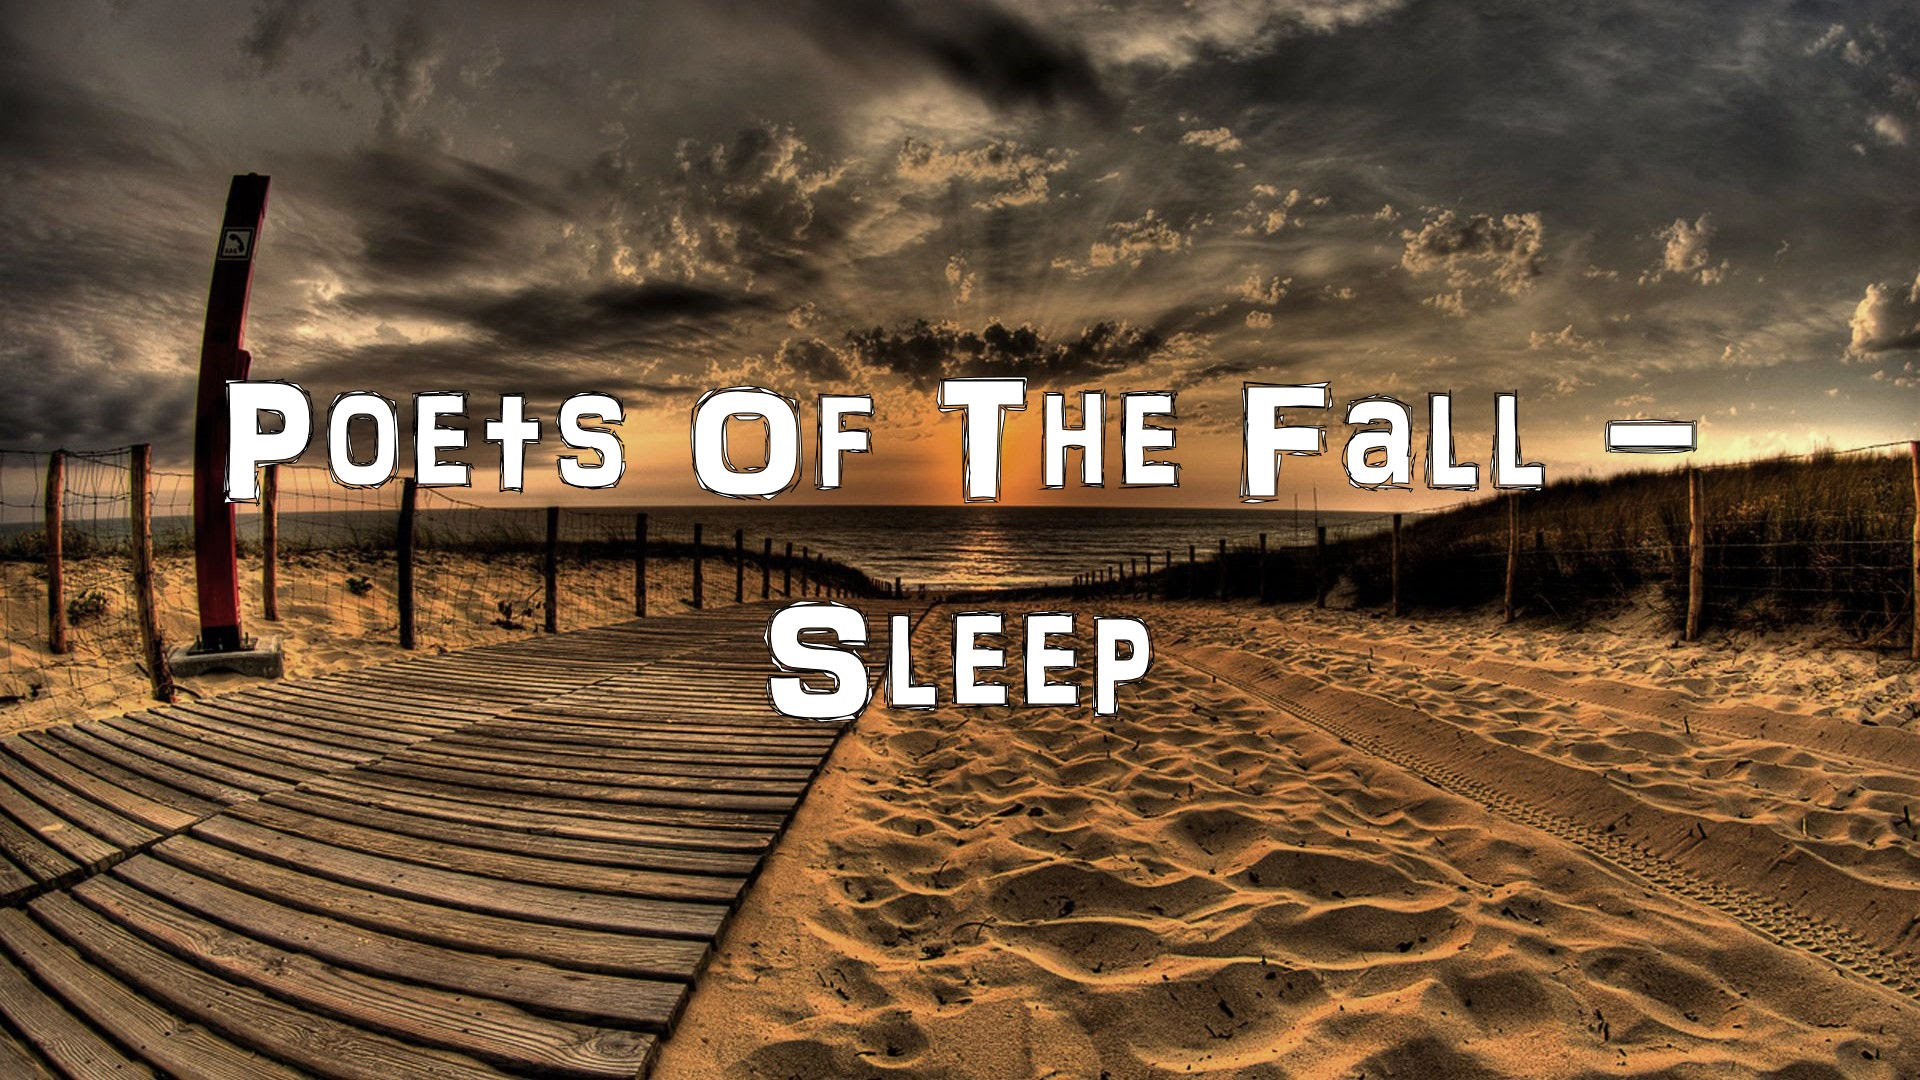 Sleep and fall